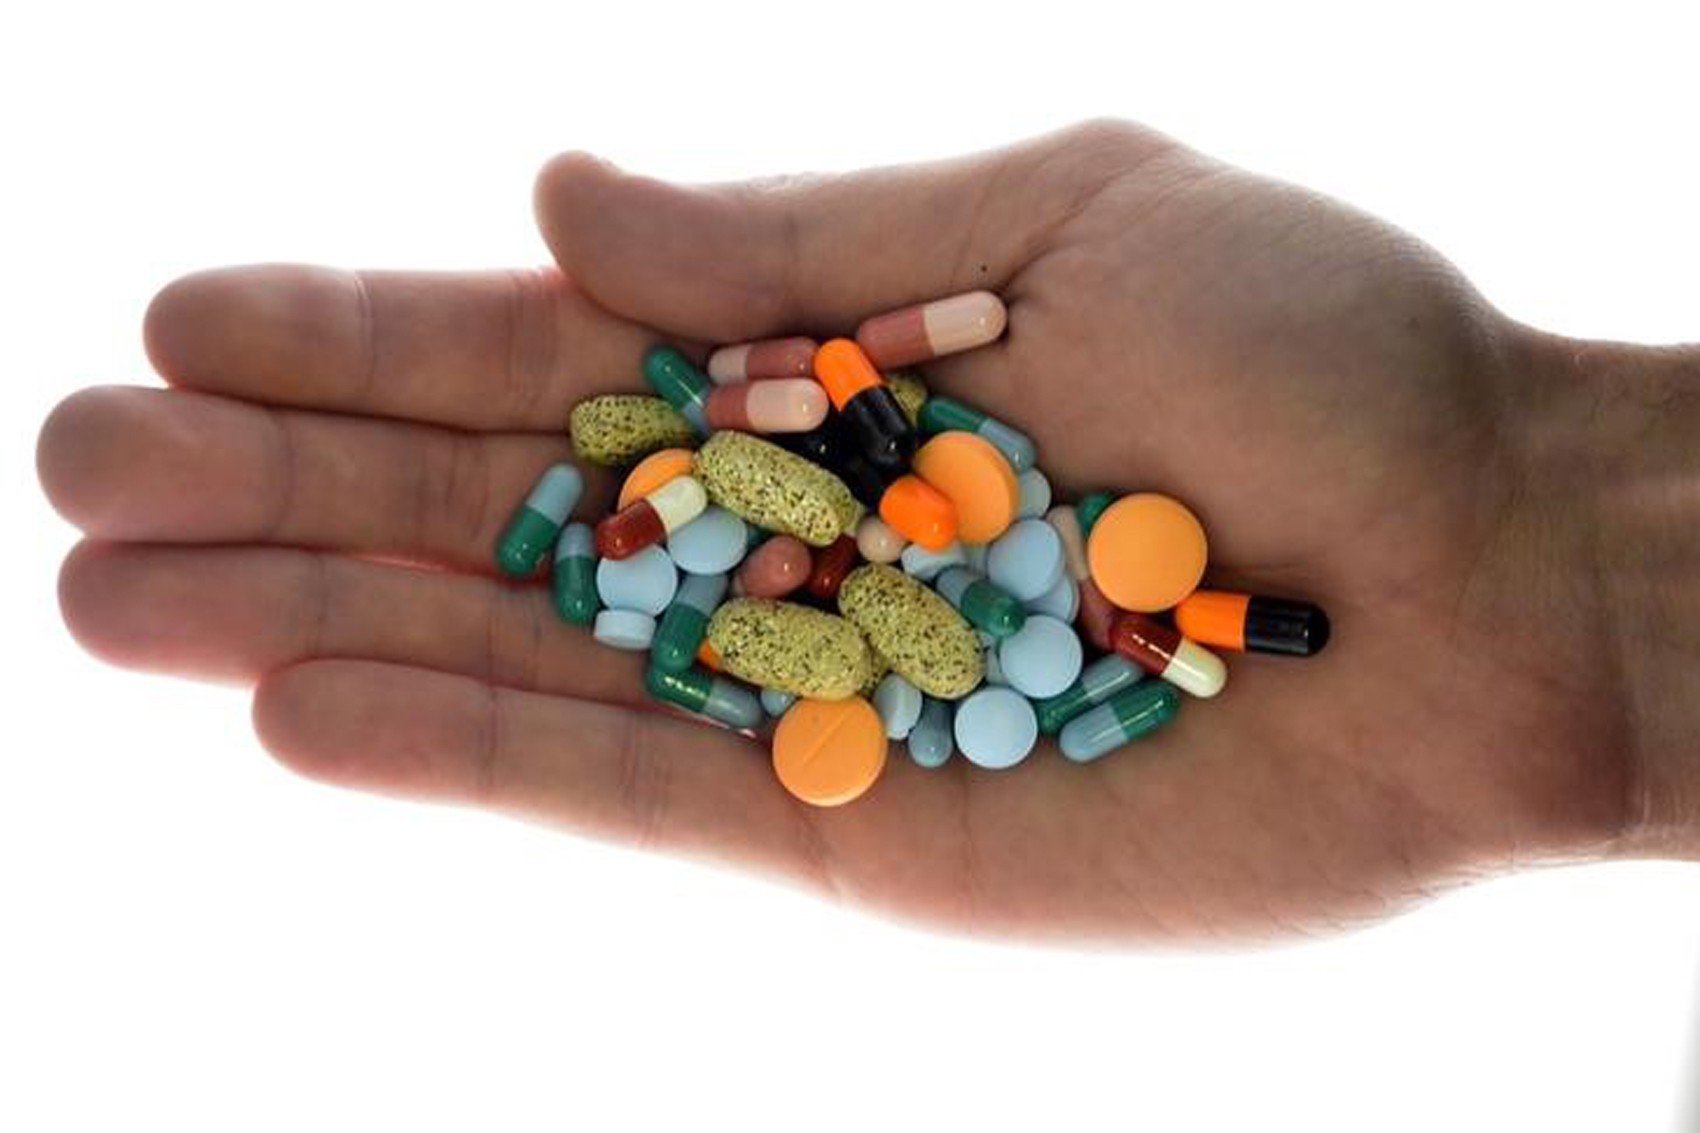  Pesquisa monitorou 7 mil pessoas por pelo menos uma década; imagem mostra mão segurando dezenas de pílulas e comprimidos (Foto: REUTERS/Srdjan Zivulovic)